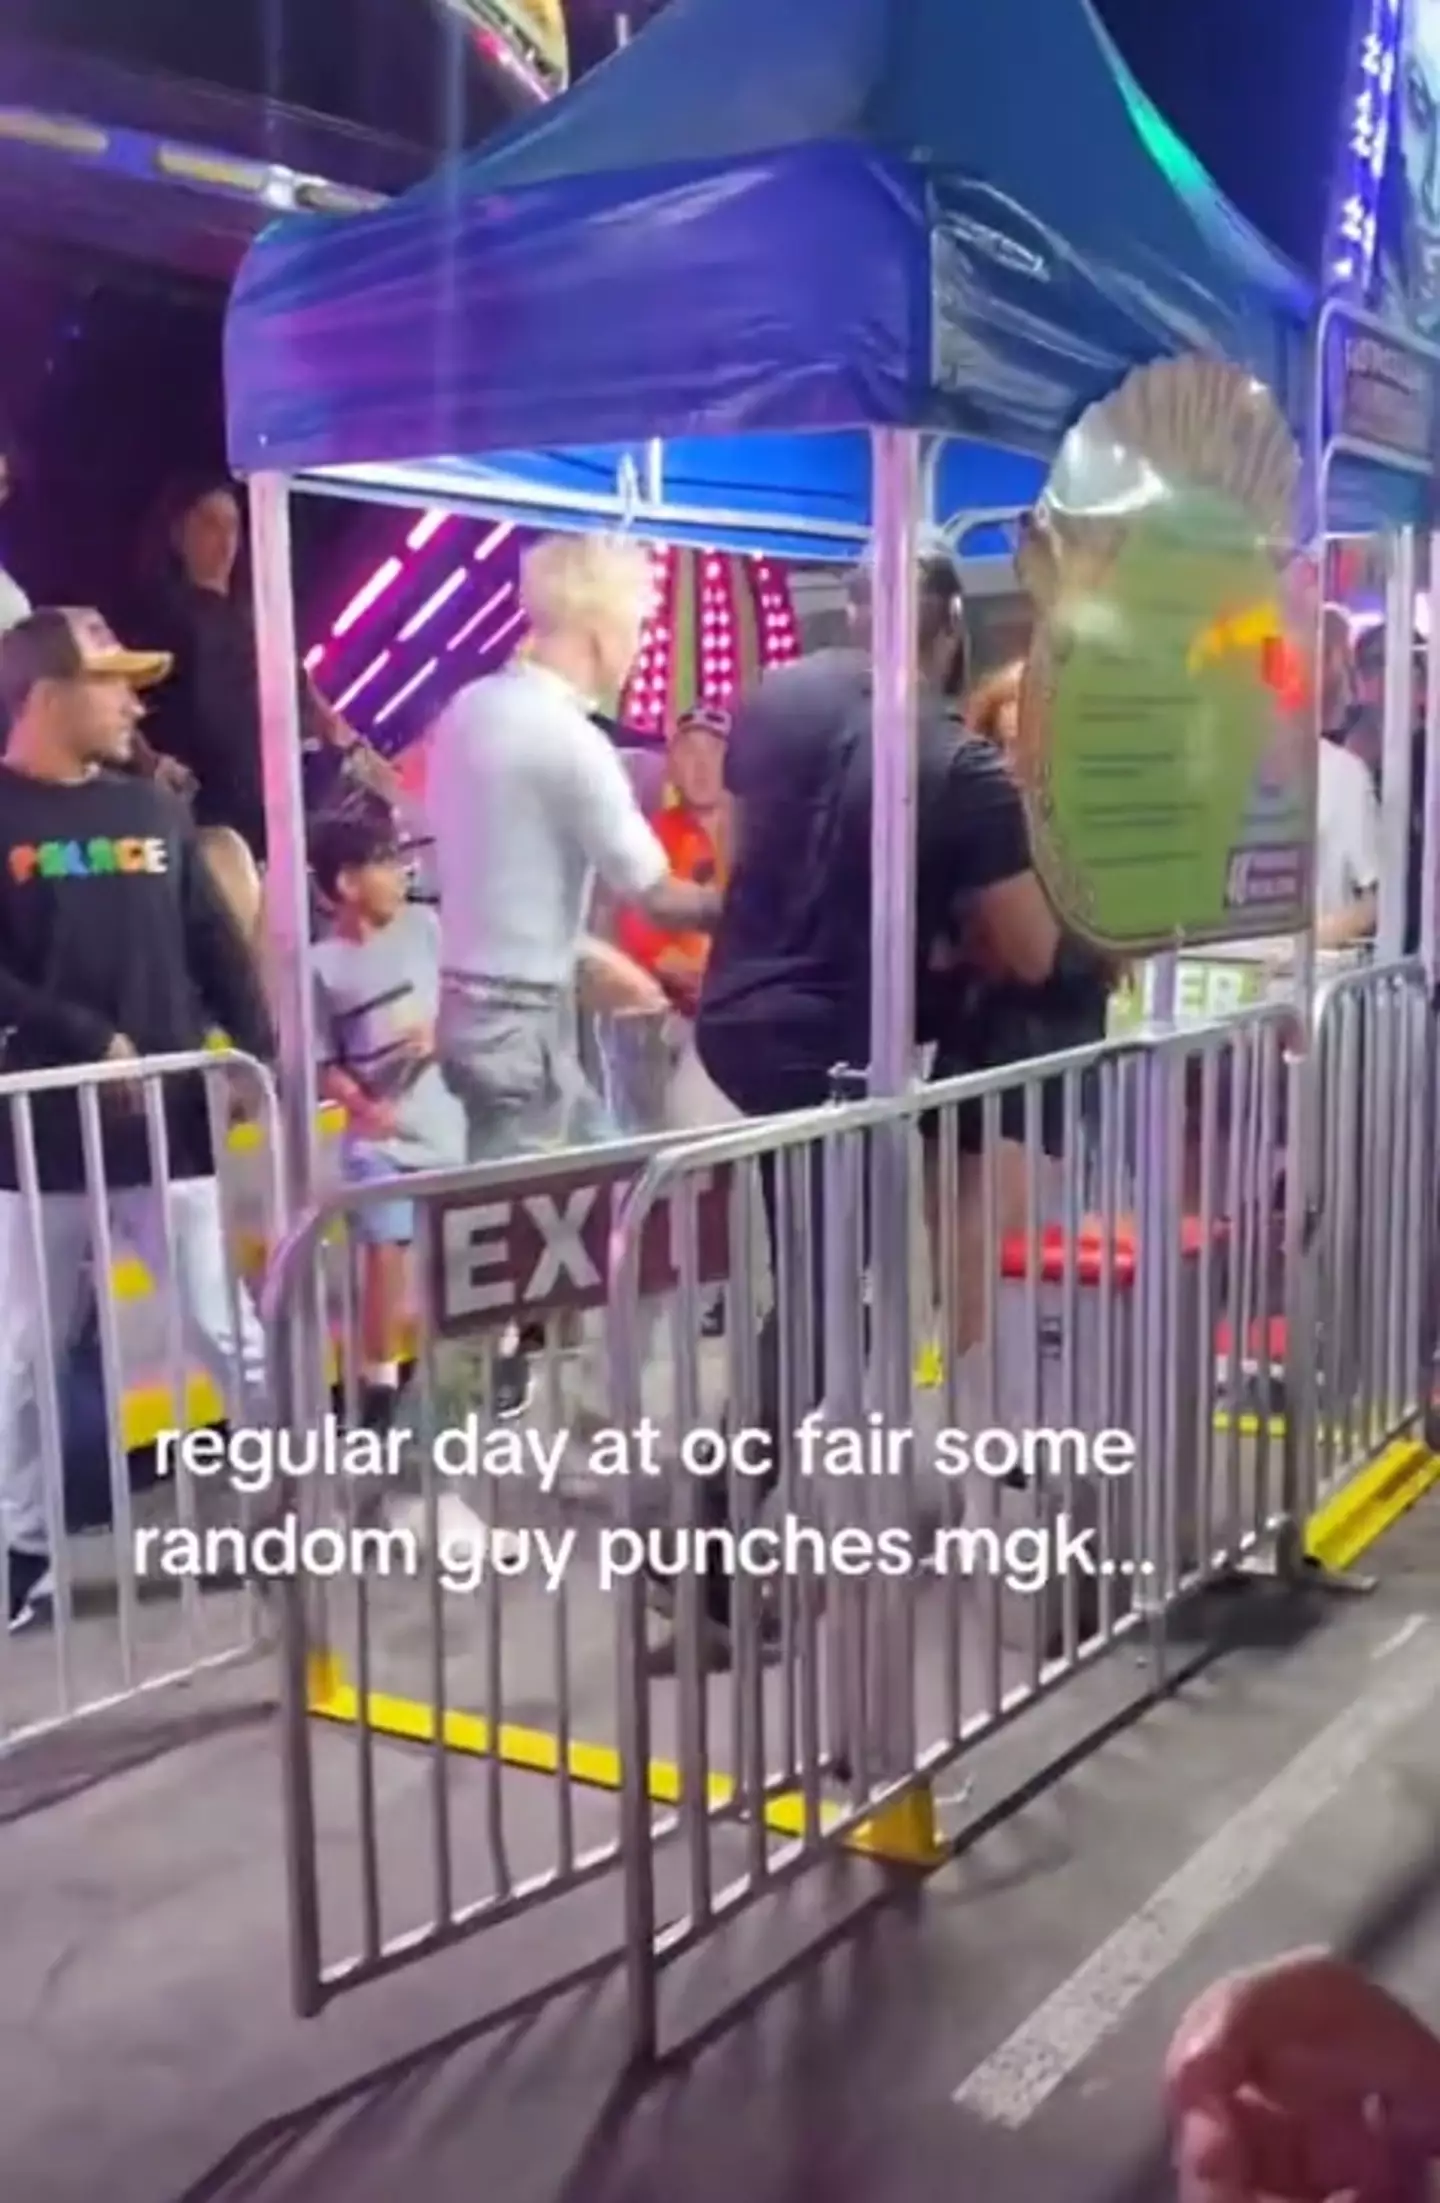 Megan Fox got slammed into a barrier during a scuffle at the fair.